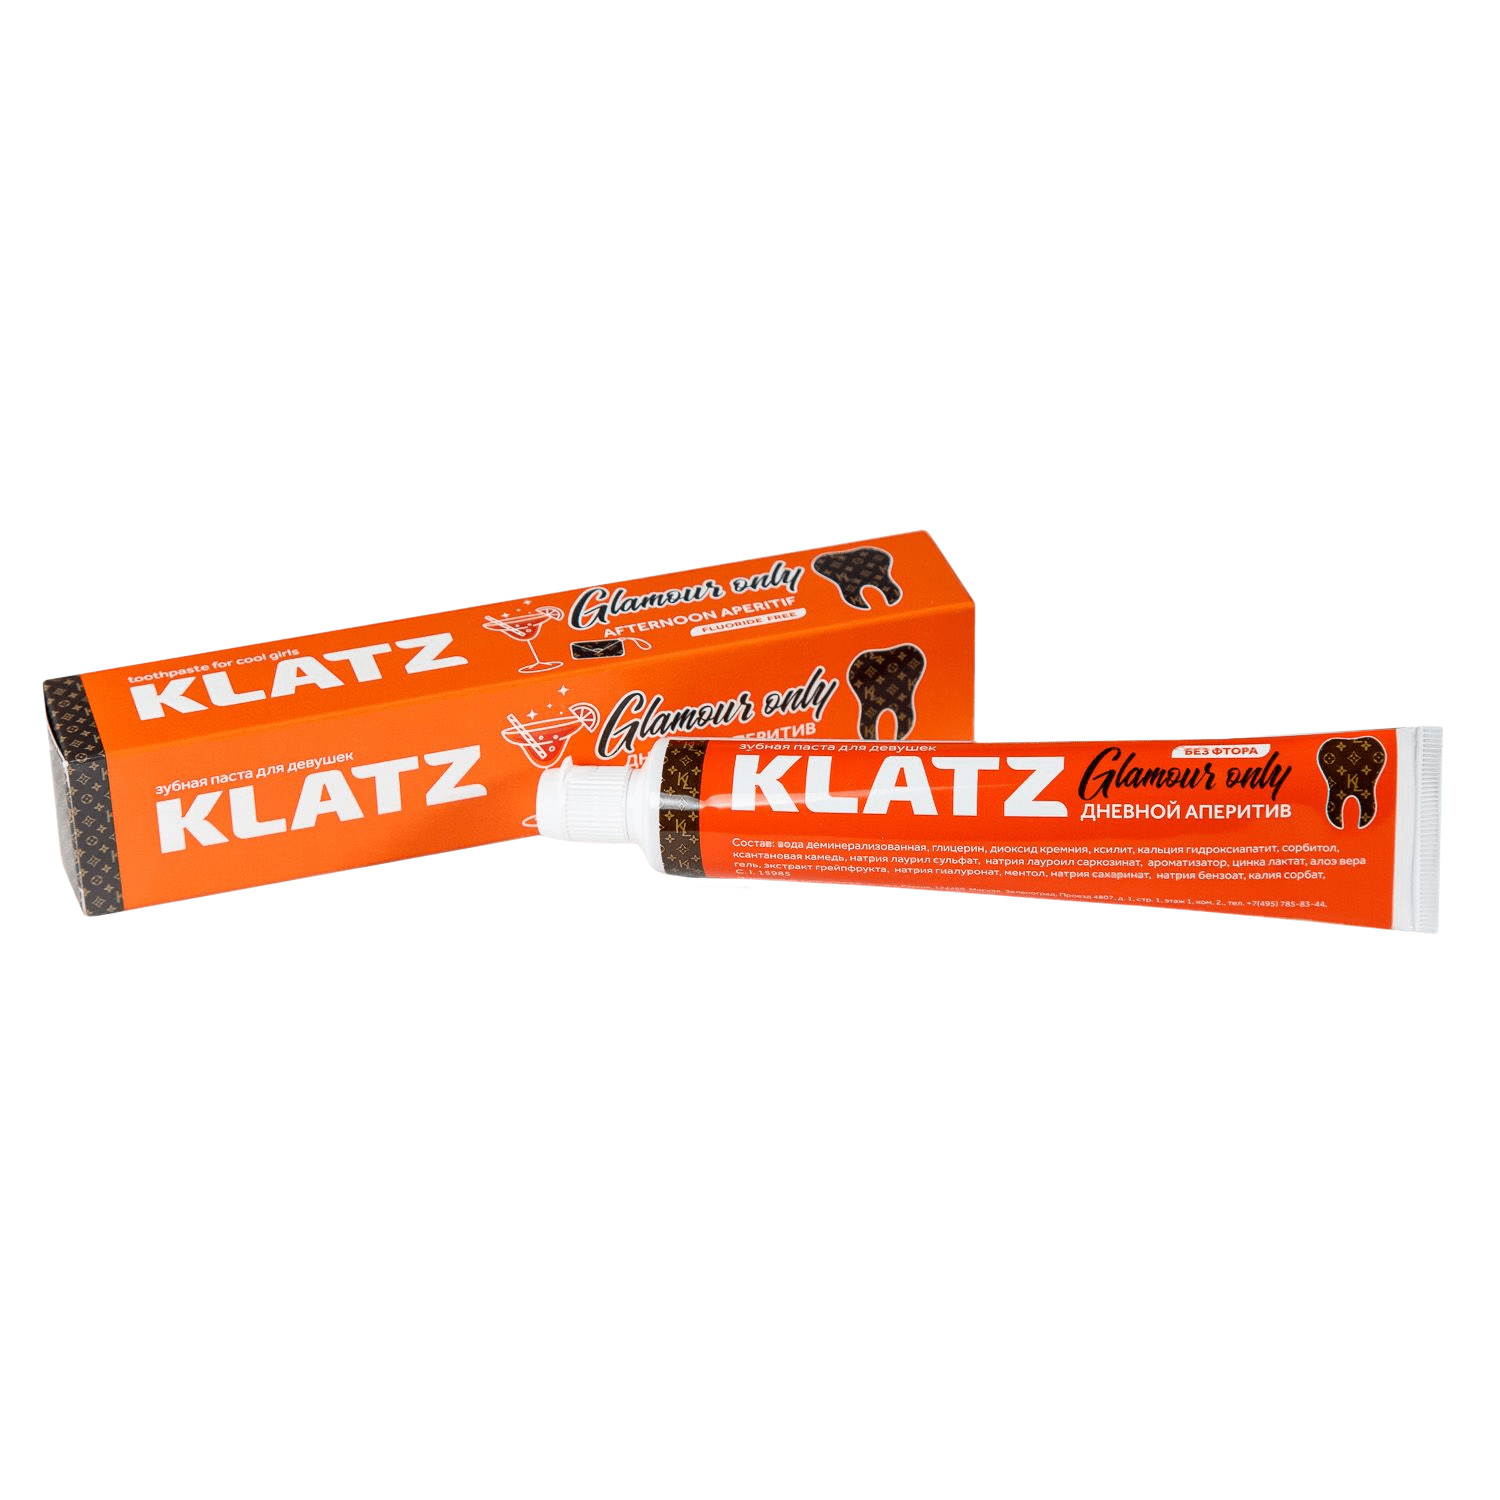 Klatz Зубная паста для девушек Дневной аперитив, 75 мл (Klatz, Glamour Only) набор для чистки зубов klatz glamour only 75 мл 3 шт